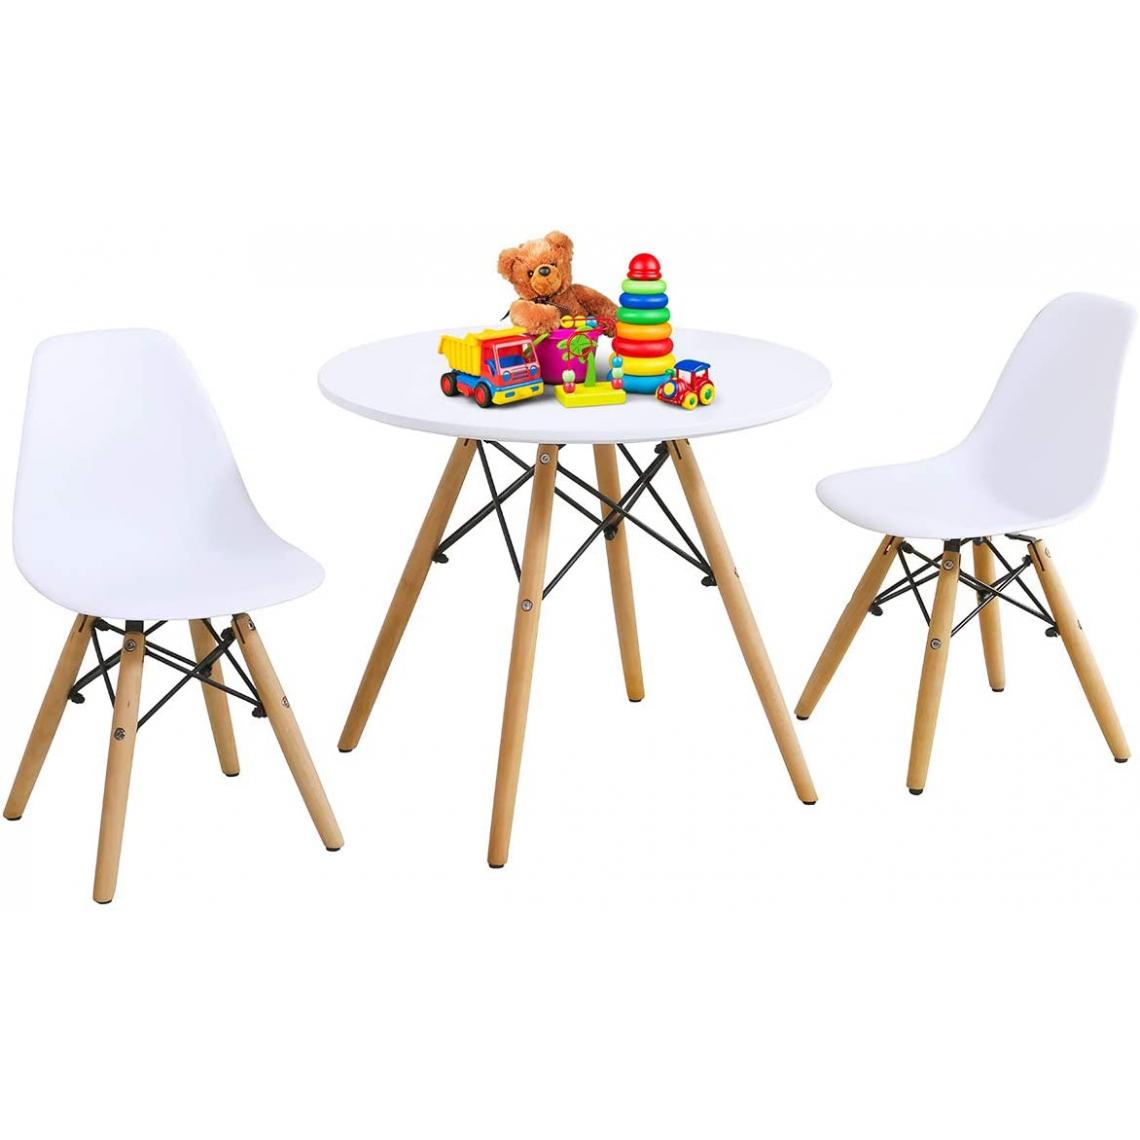 GIANTEX - GIANTEX Ensemble de Table et Chaises pour Enfants, Set de 1 Table et 2 Chaises pour Enfants, Fabriquez en MDF de Haute Qualité, Blanc - Tables à manger